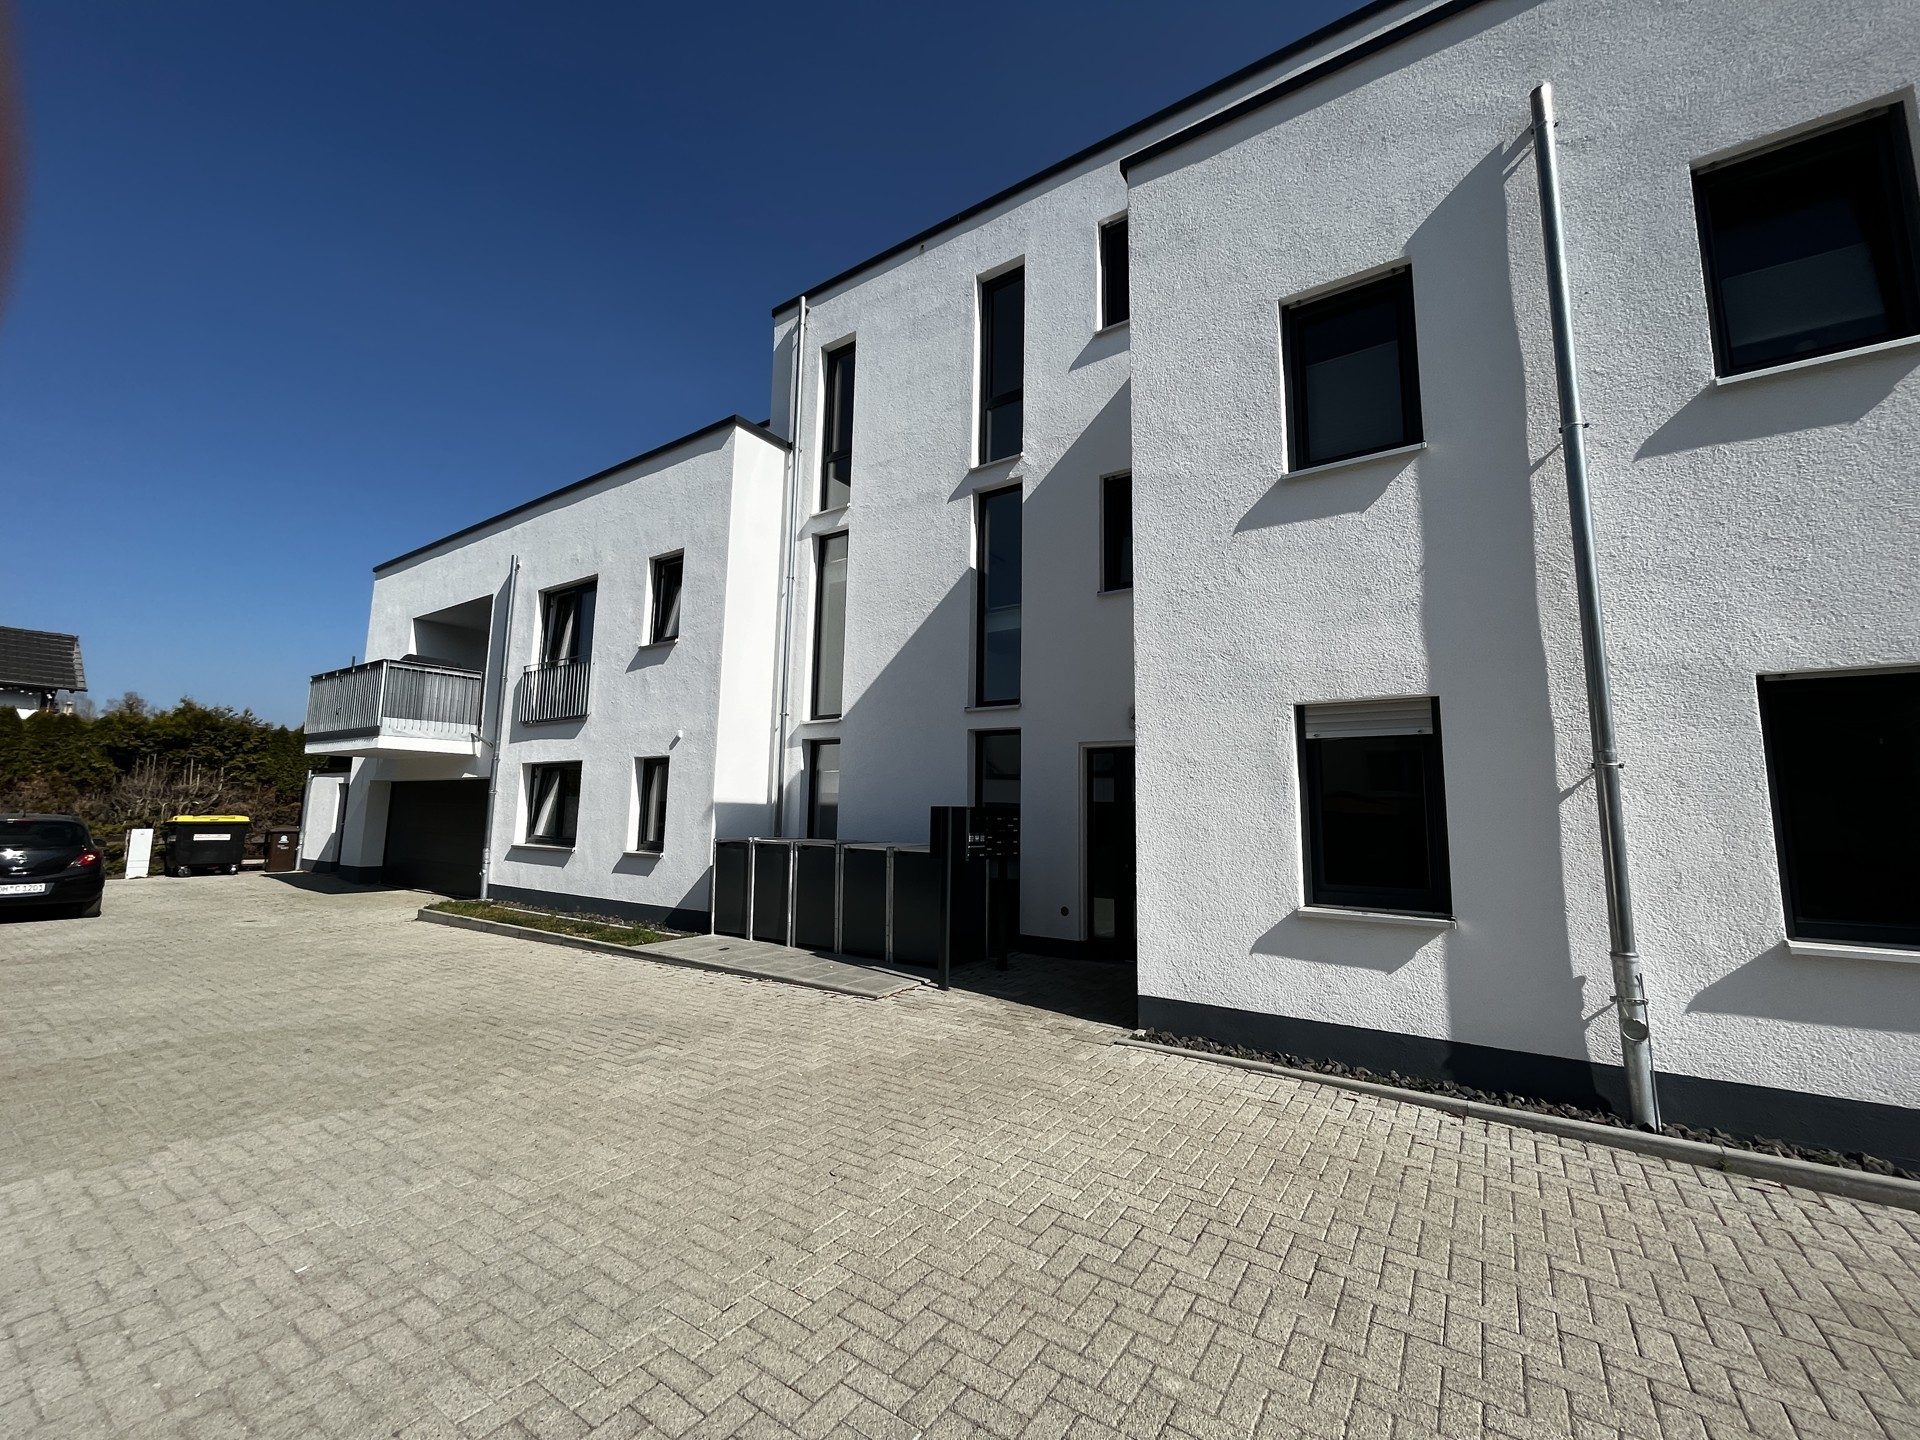 Immobilienangebot - Lohfelden - Alle - Neubau  großzügige Penthouse Wohnung in Lohfelden zu vermieten!